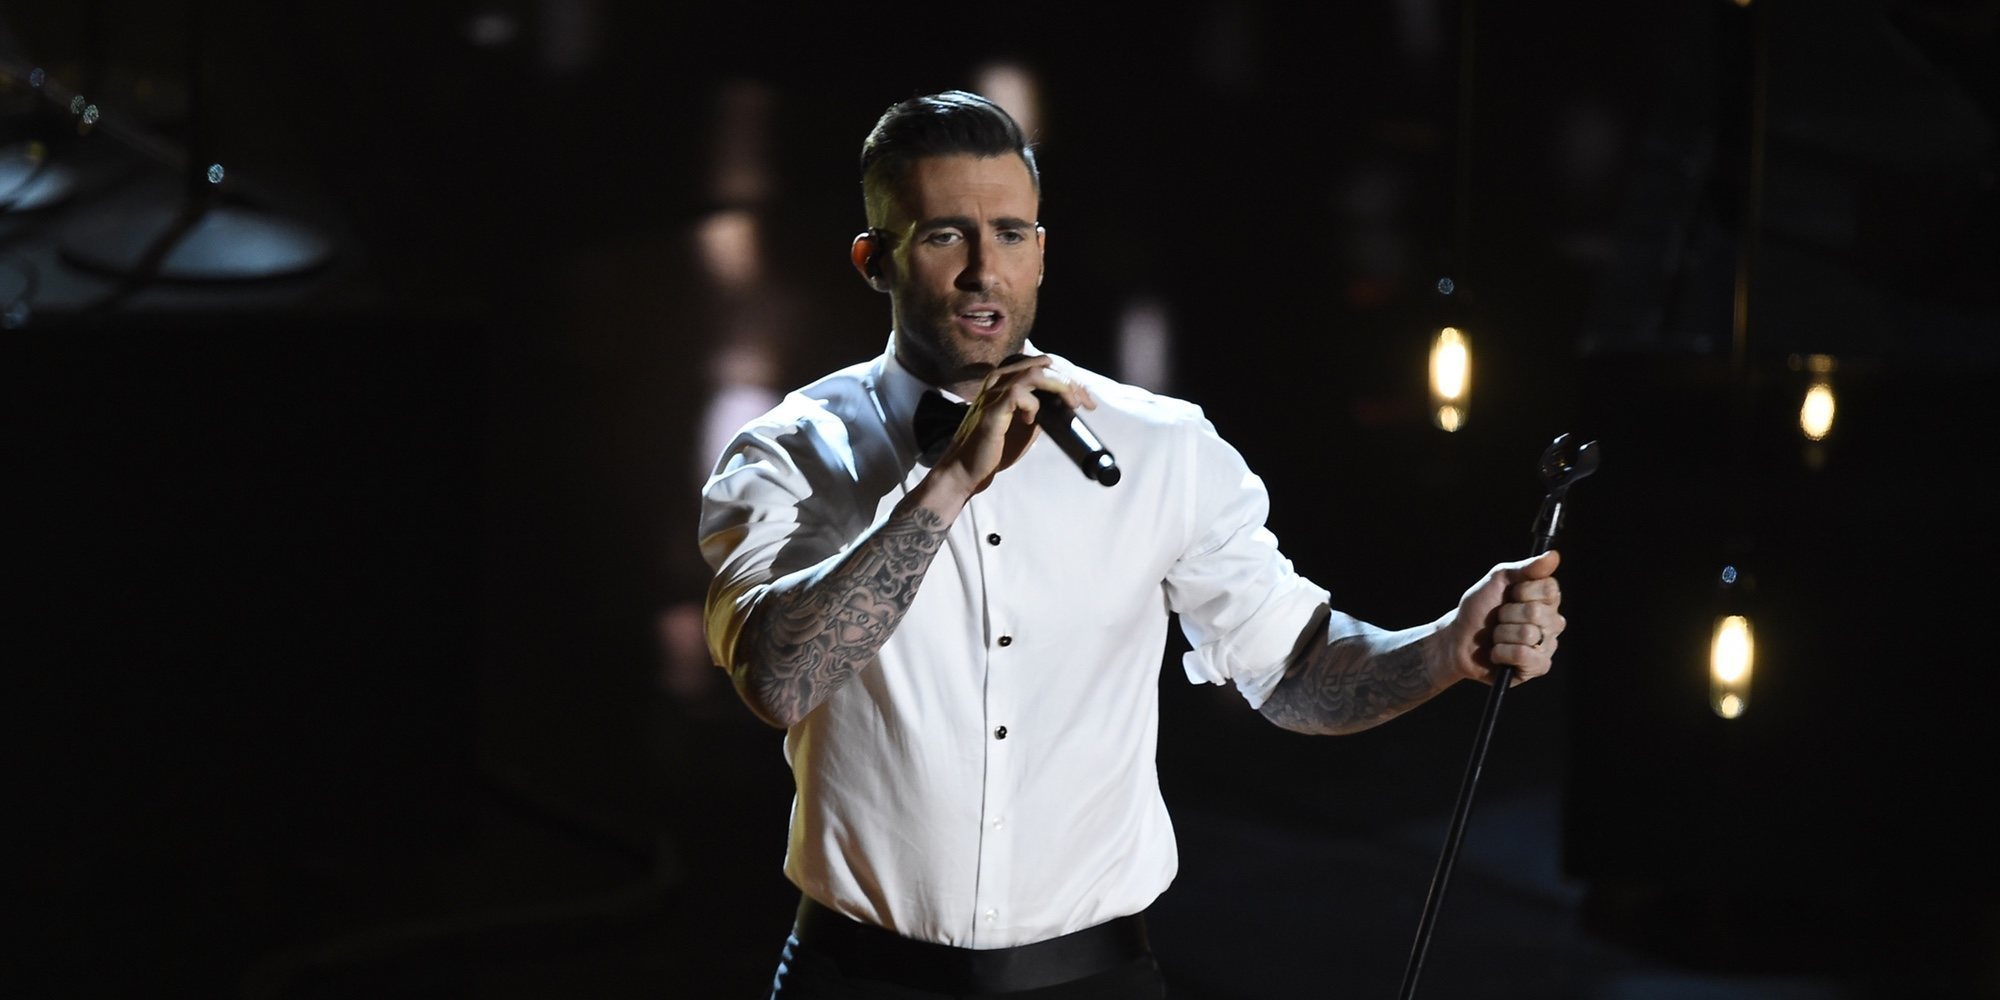 El grupo Maroon 5 actuará durante el intermedio de la Super Bowl 2019